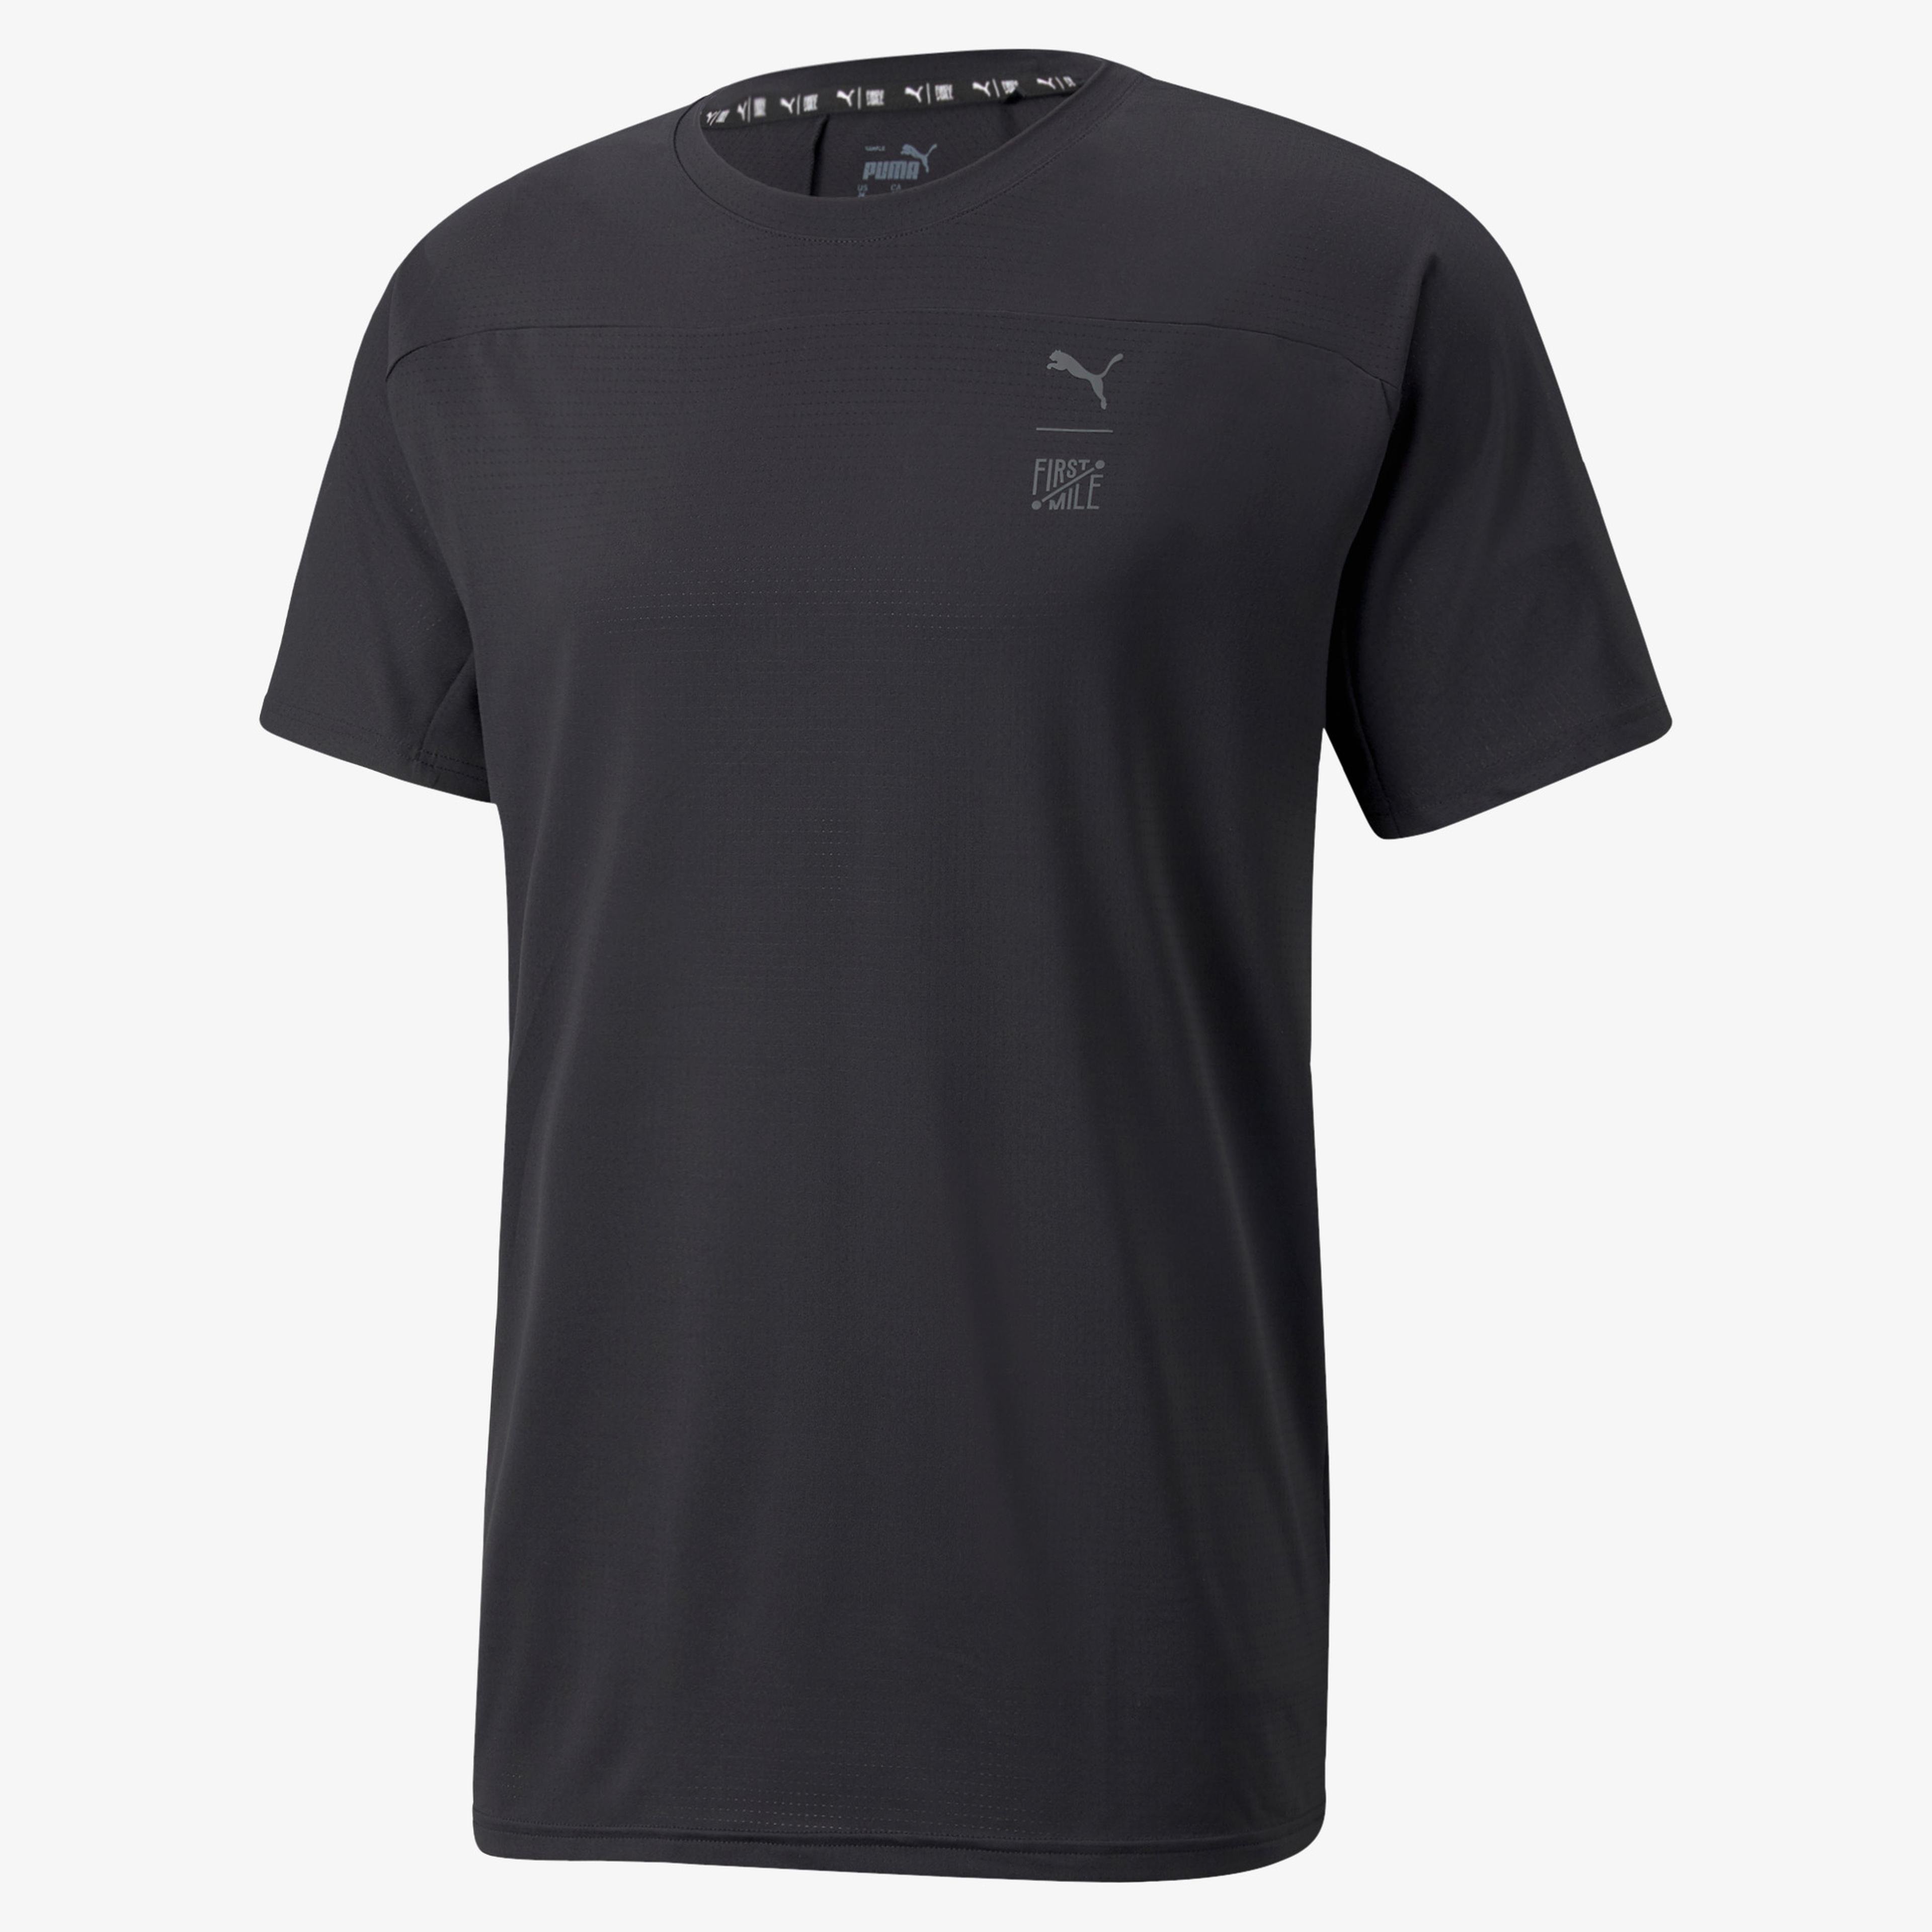 Puma Train First Mile Erkek Siyah T-Shirt